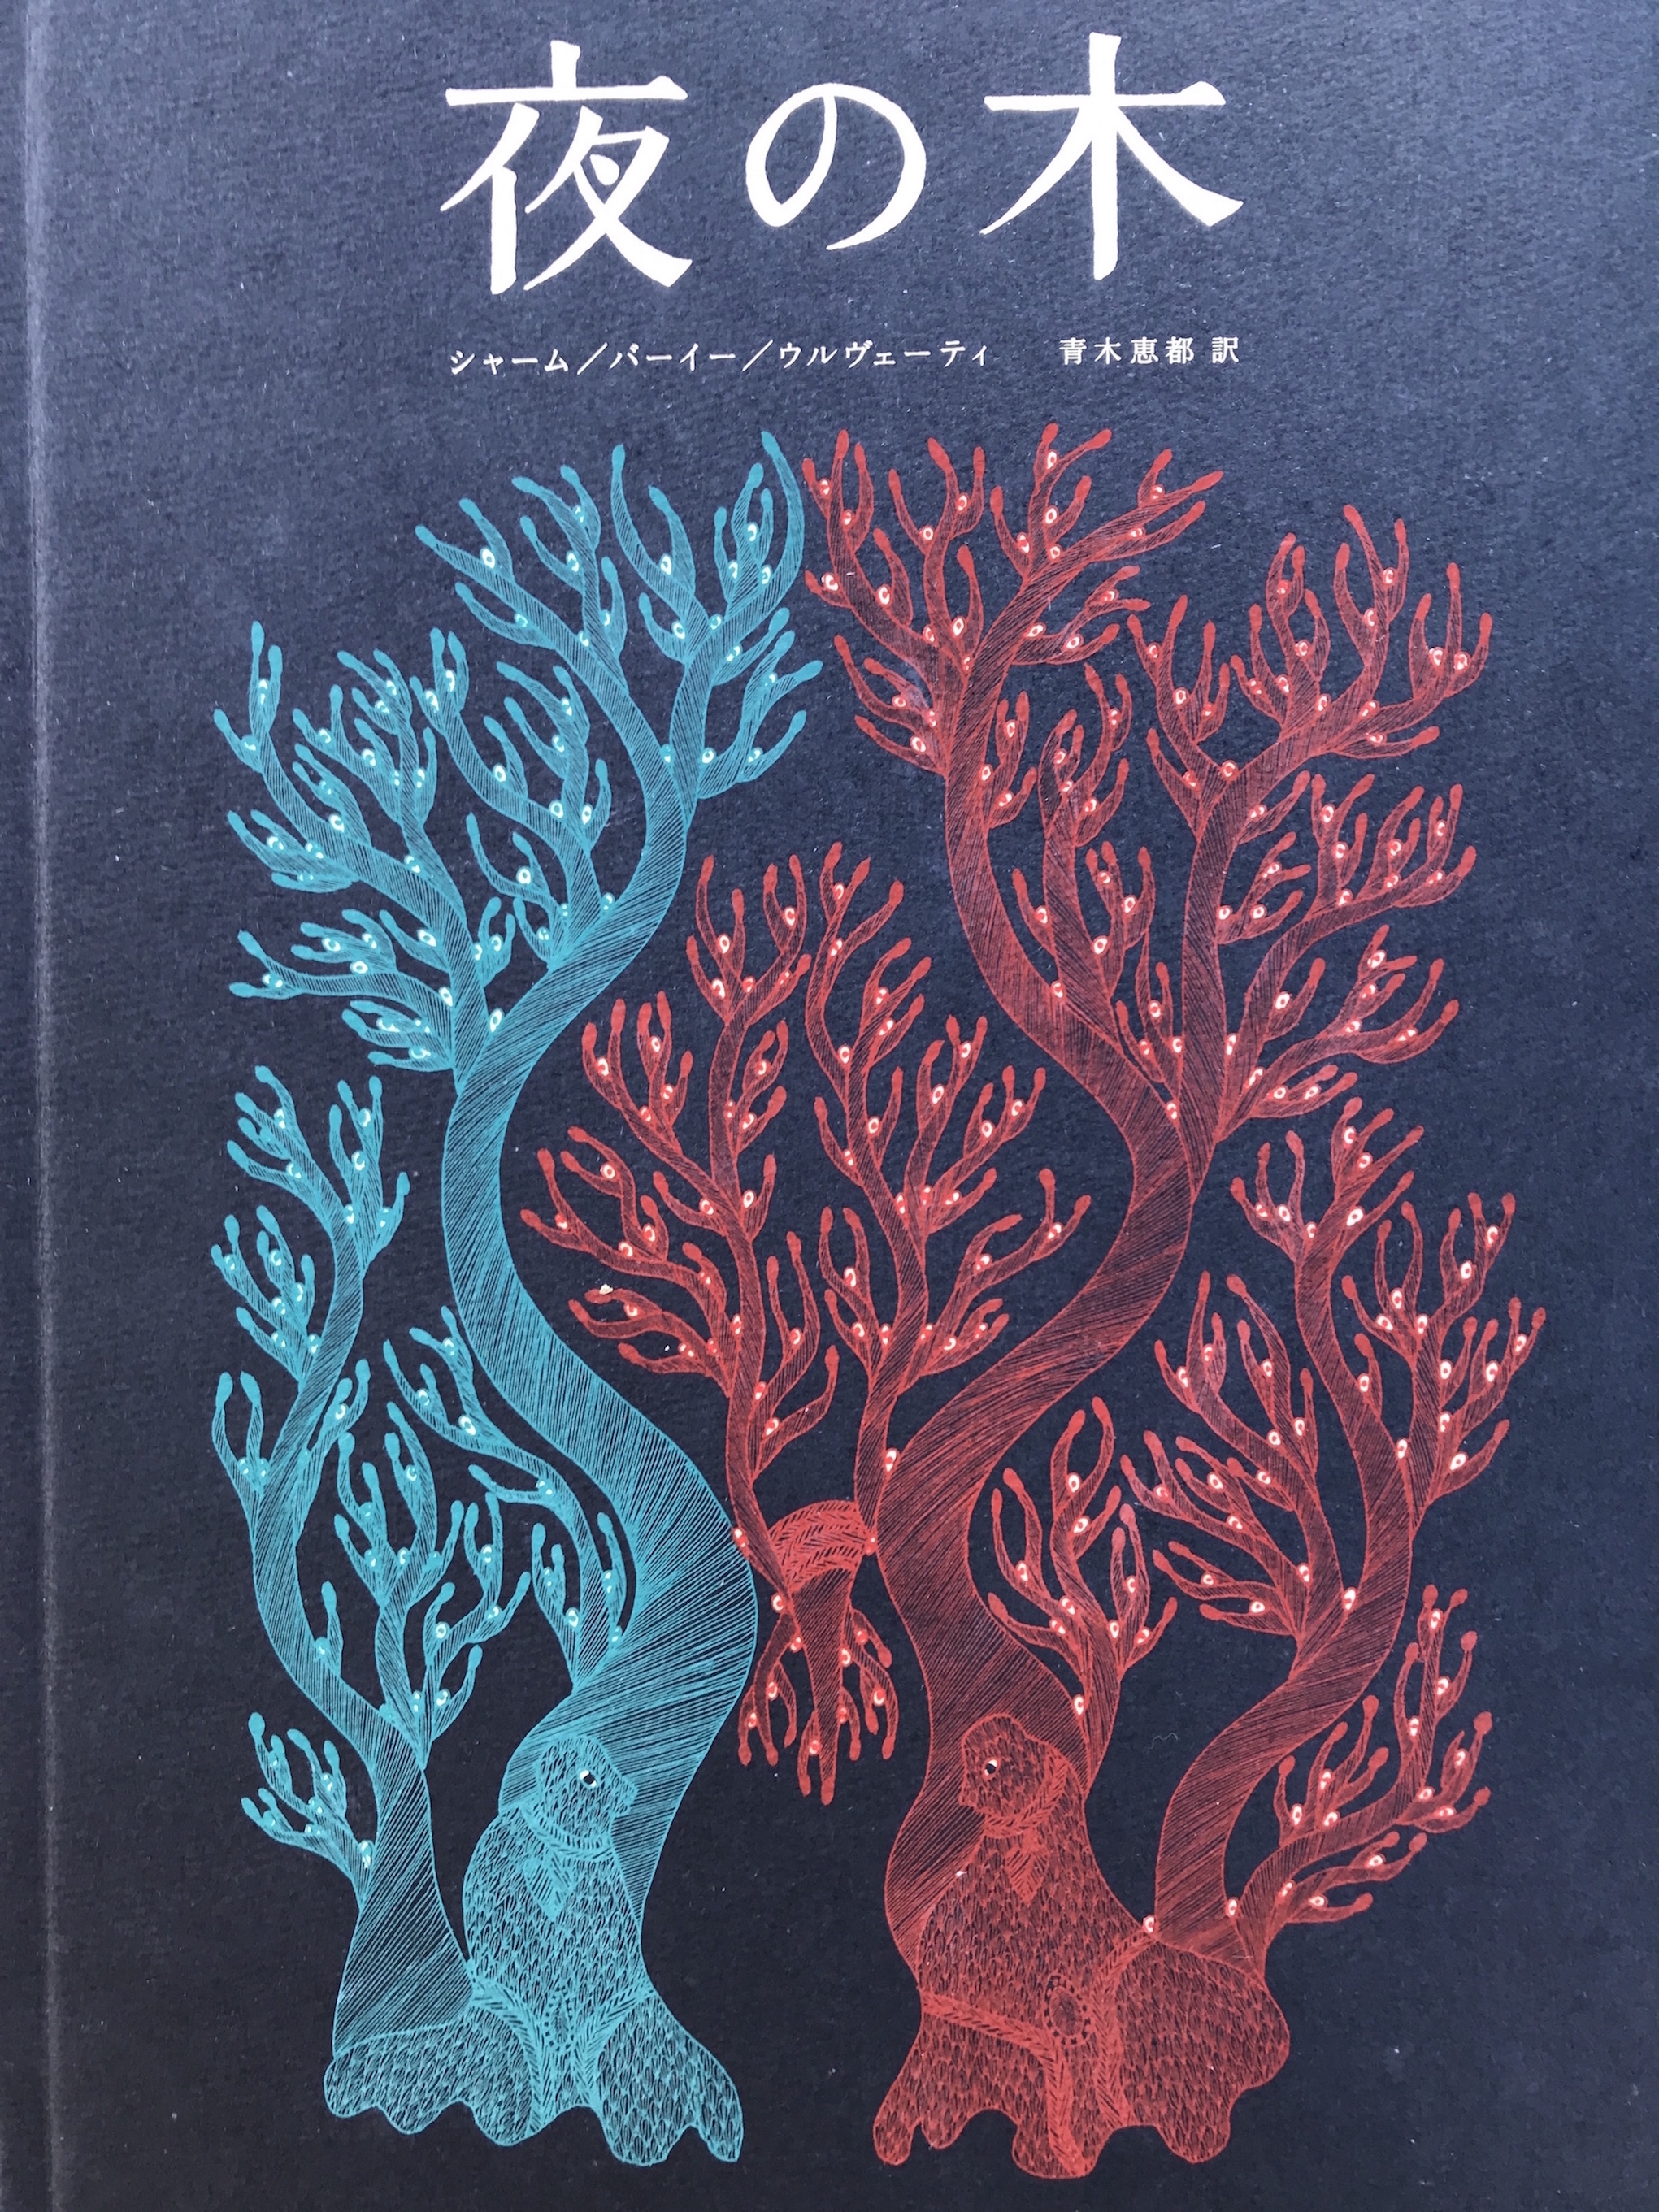 夜の木』第8刷発売記念 大判シルクスクリーン作品展 | OUTBOUND